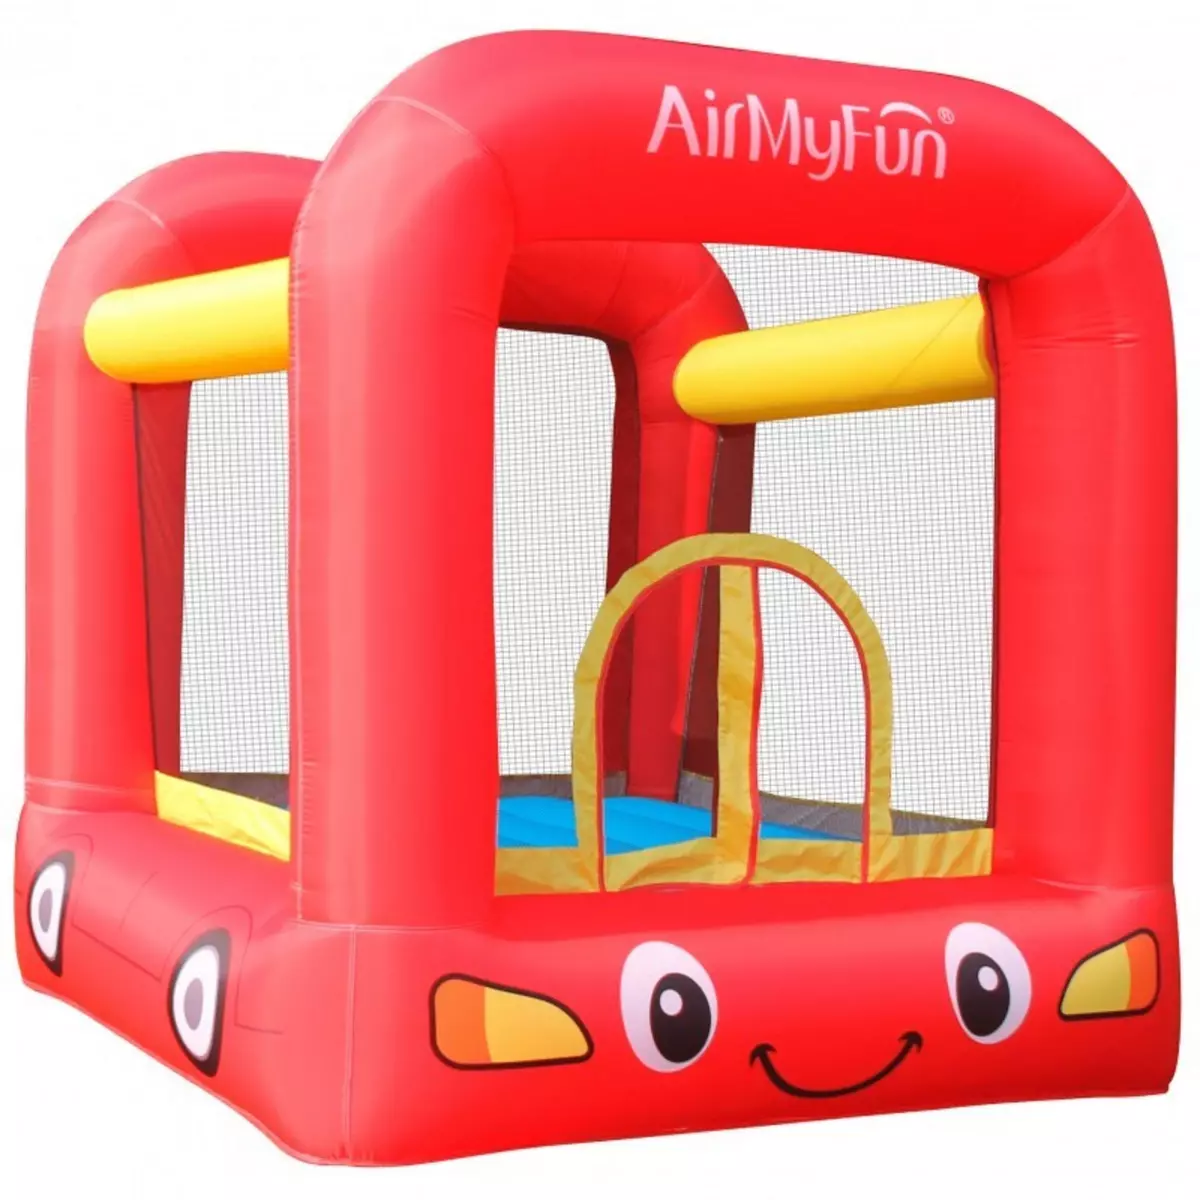 AIRMYFUN Château Gonflable Jumpy Car avec aire de jeux et trampoline, Surface 210x205x200 cm - souffleur et sac de rangement inclus